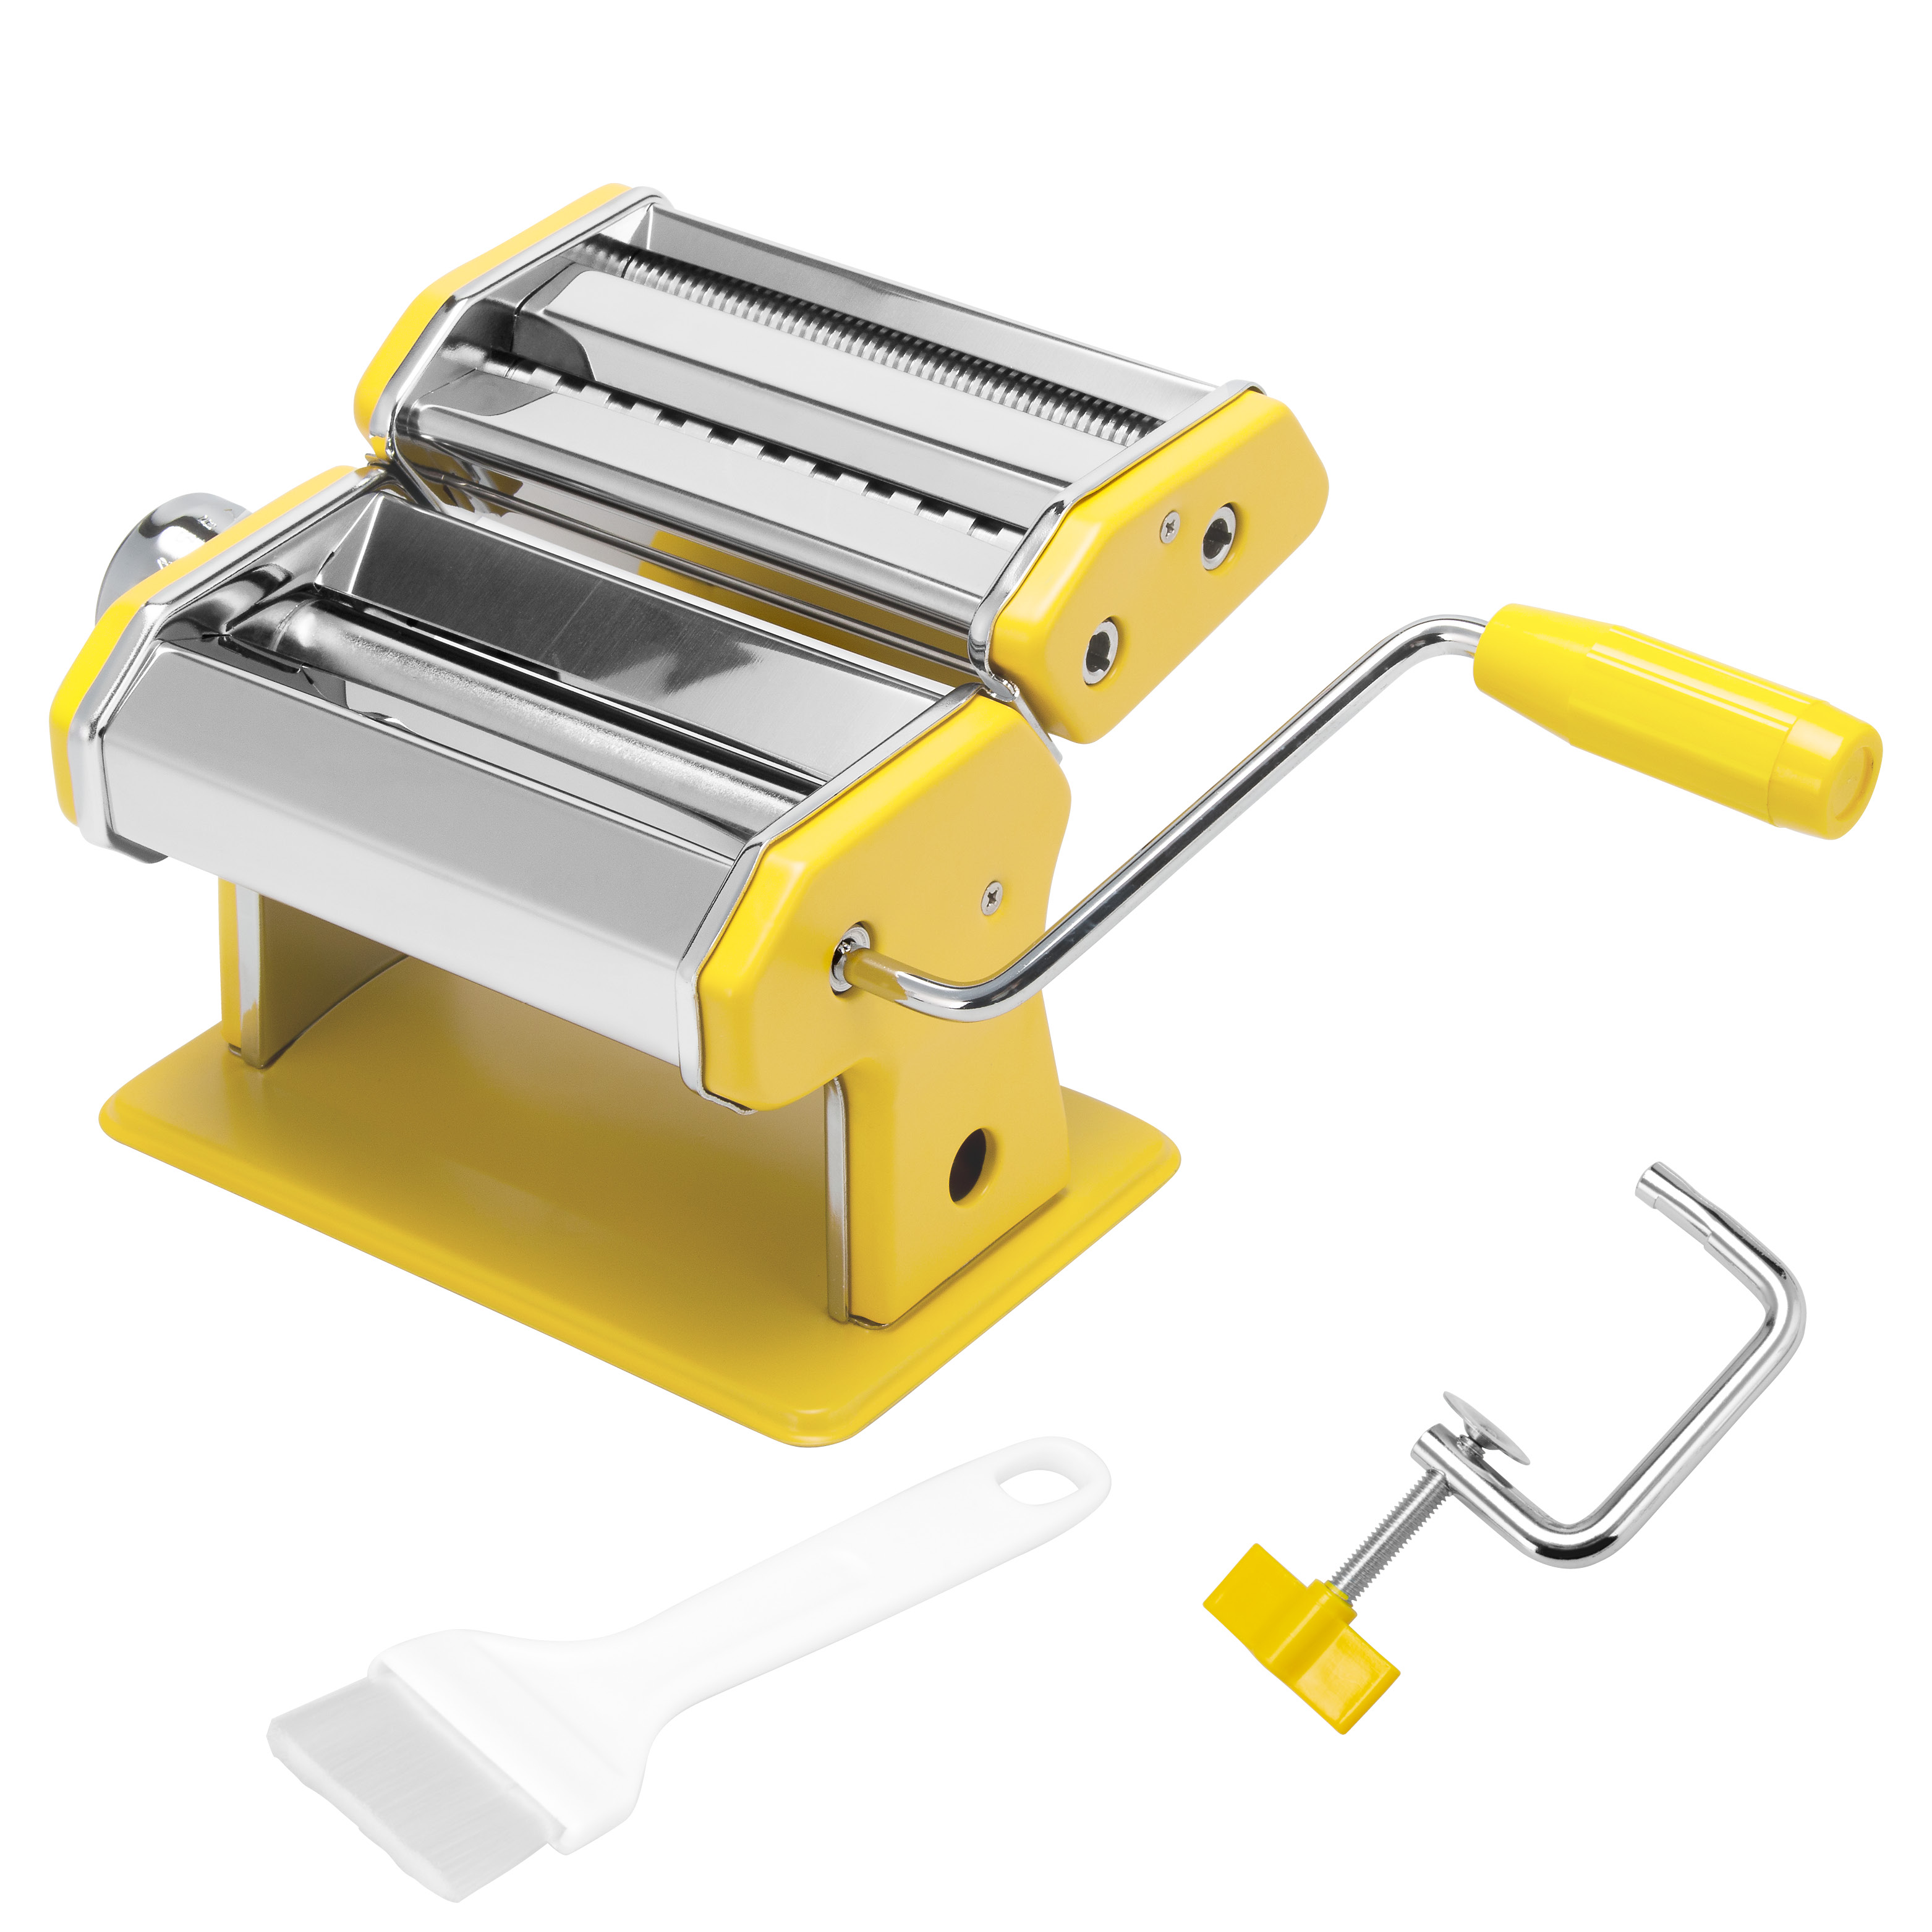 Nudelmaschine Edelstahl/Metall gelb - für Spaghetti, Pasta und Lasagne (7 Stufen), Pastamaschine